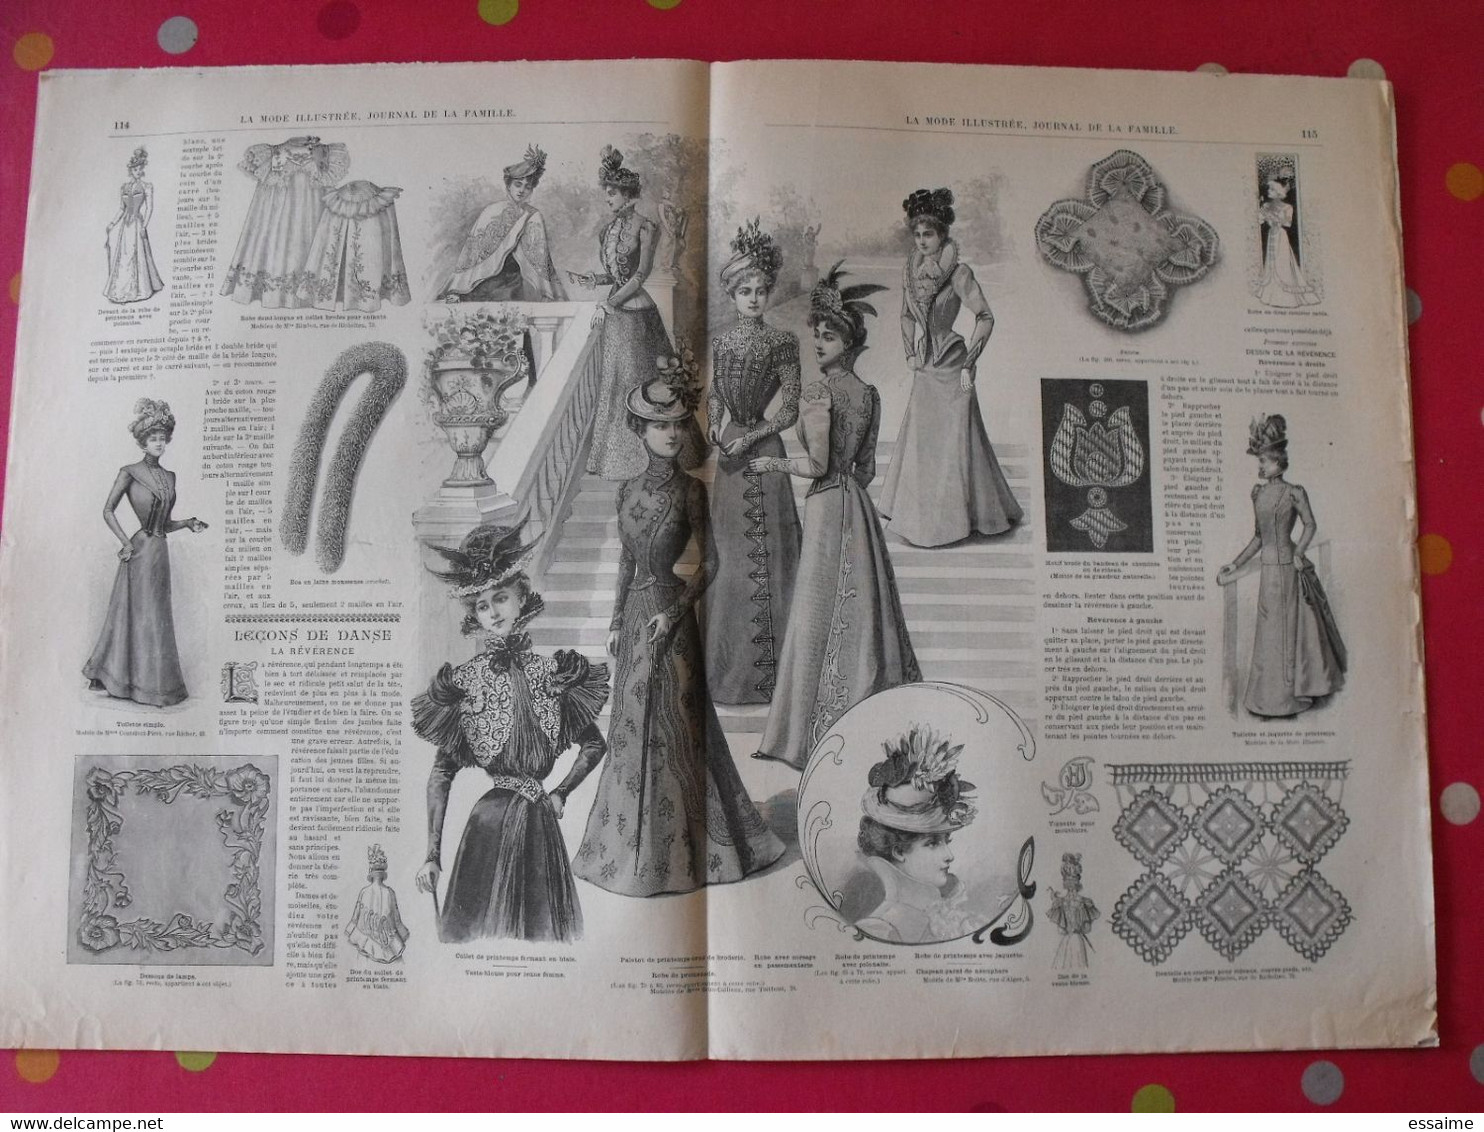 4 revues la mode illustrée, journal de la famille.  n° 10,12,13,14 de 1899. couverture en couleur. jolies gravures